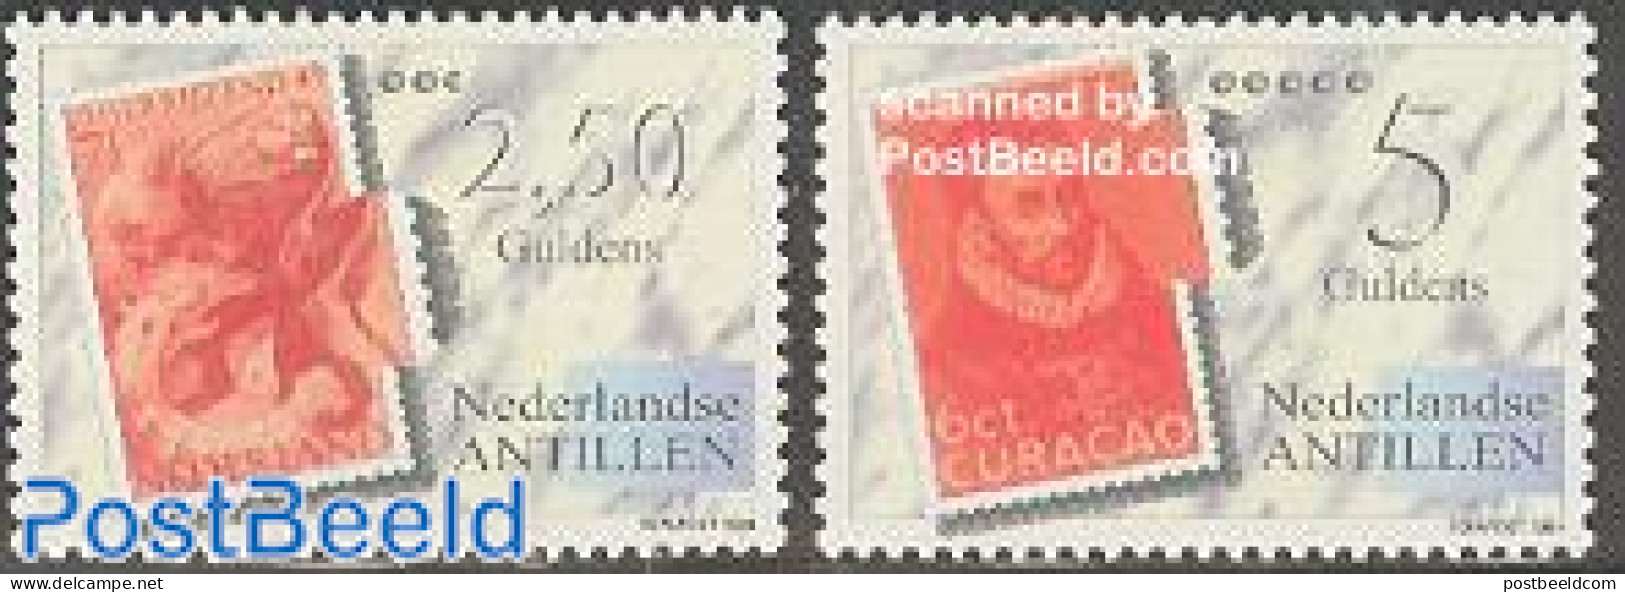 Netherlands Antilles 1994 Fepapost 2v, Mint NH, Philately - Stamps On Stamps - Francobolli Su Francobolli